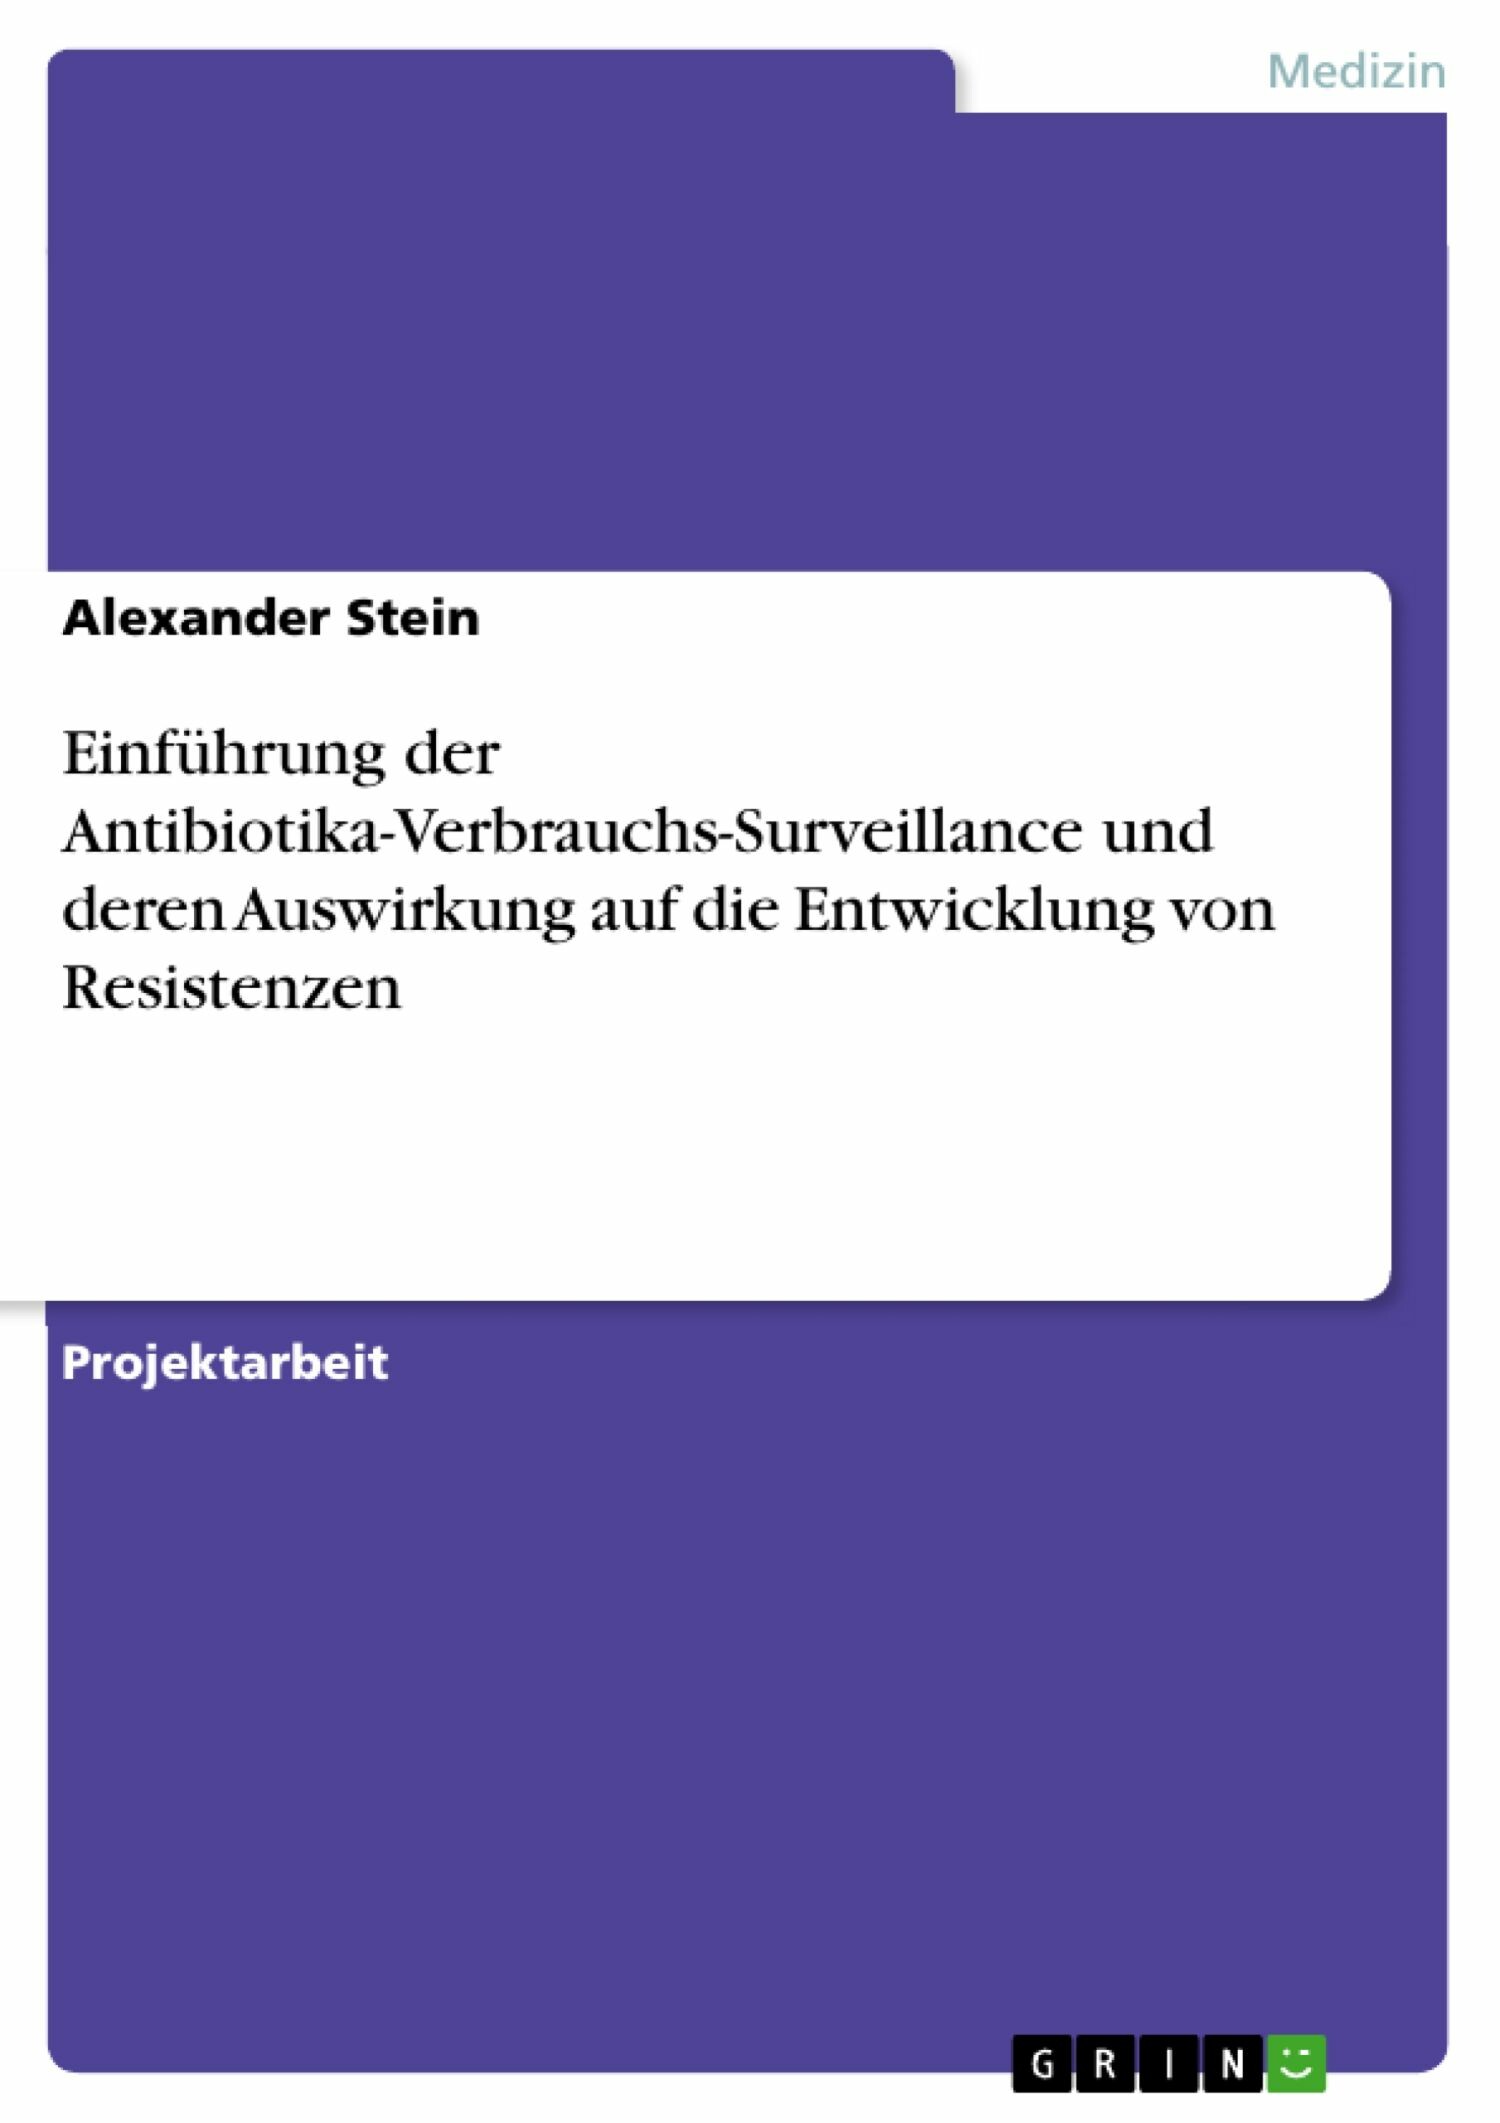 Einführung der Antibiotika-Verbrauchs-Surveillance und deren Auswirkung auf die Entwicklung von Resistenzen